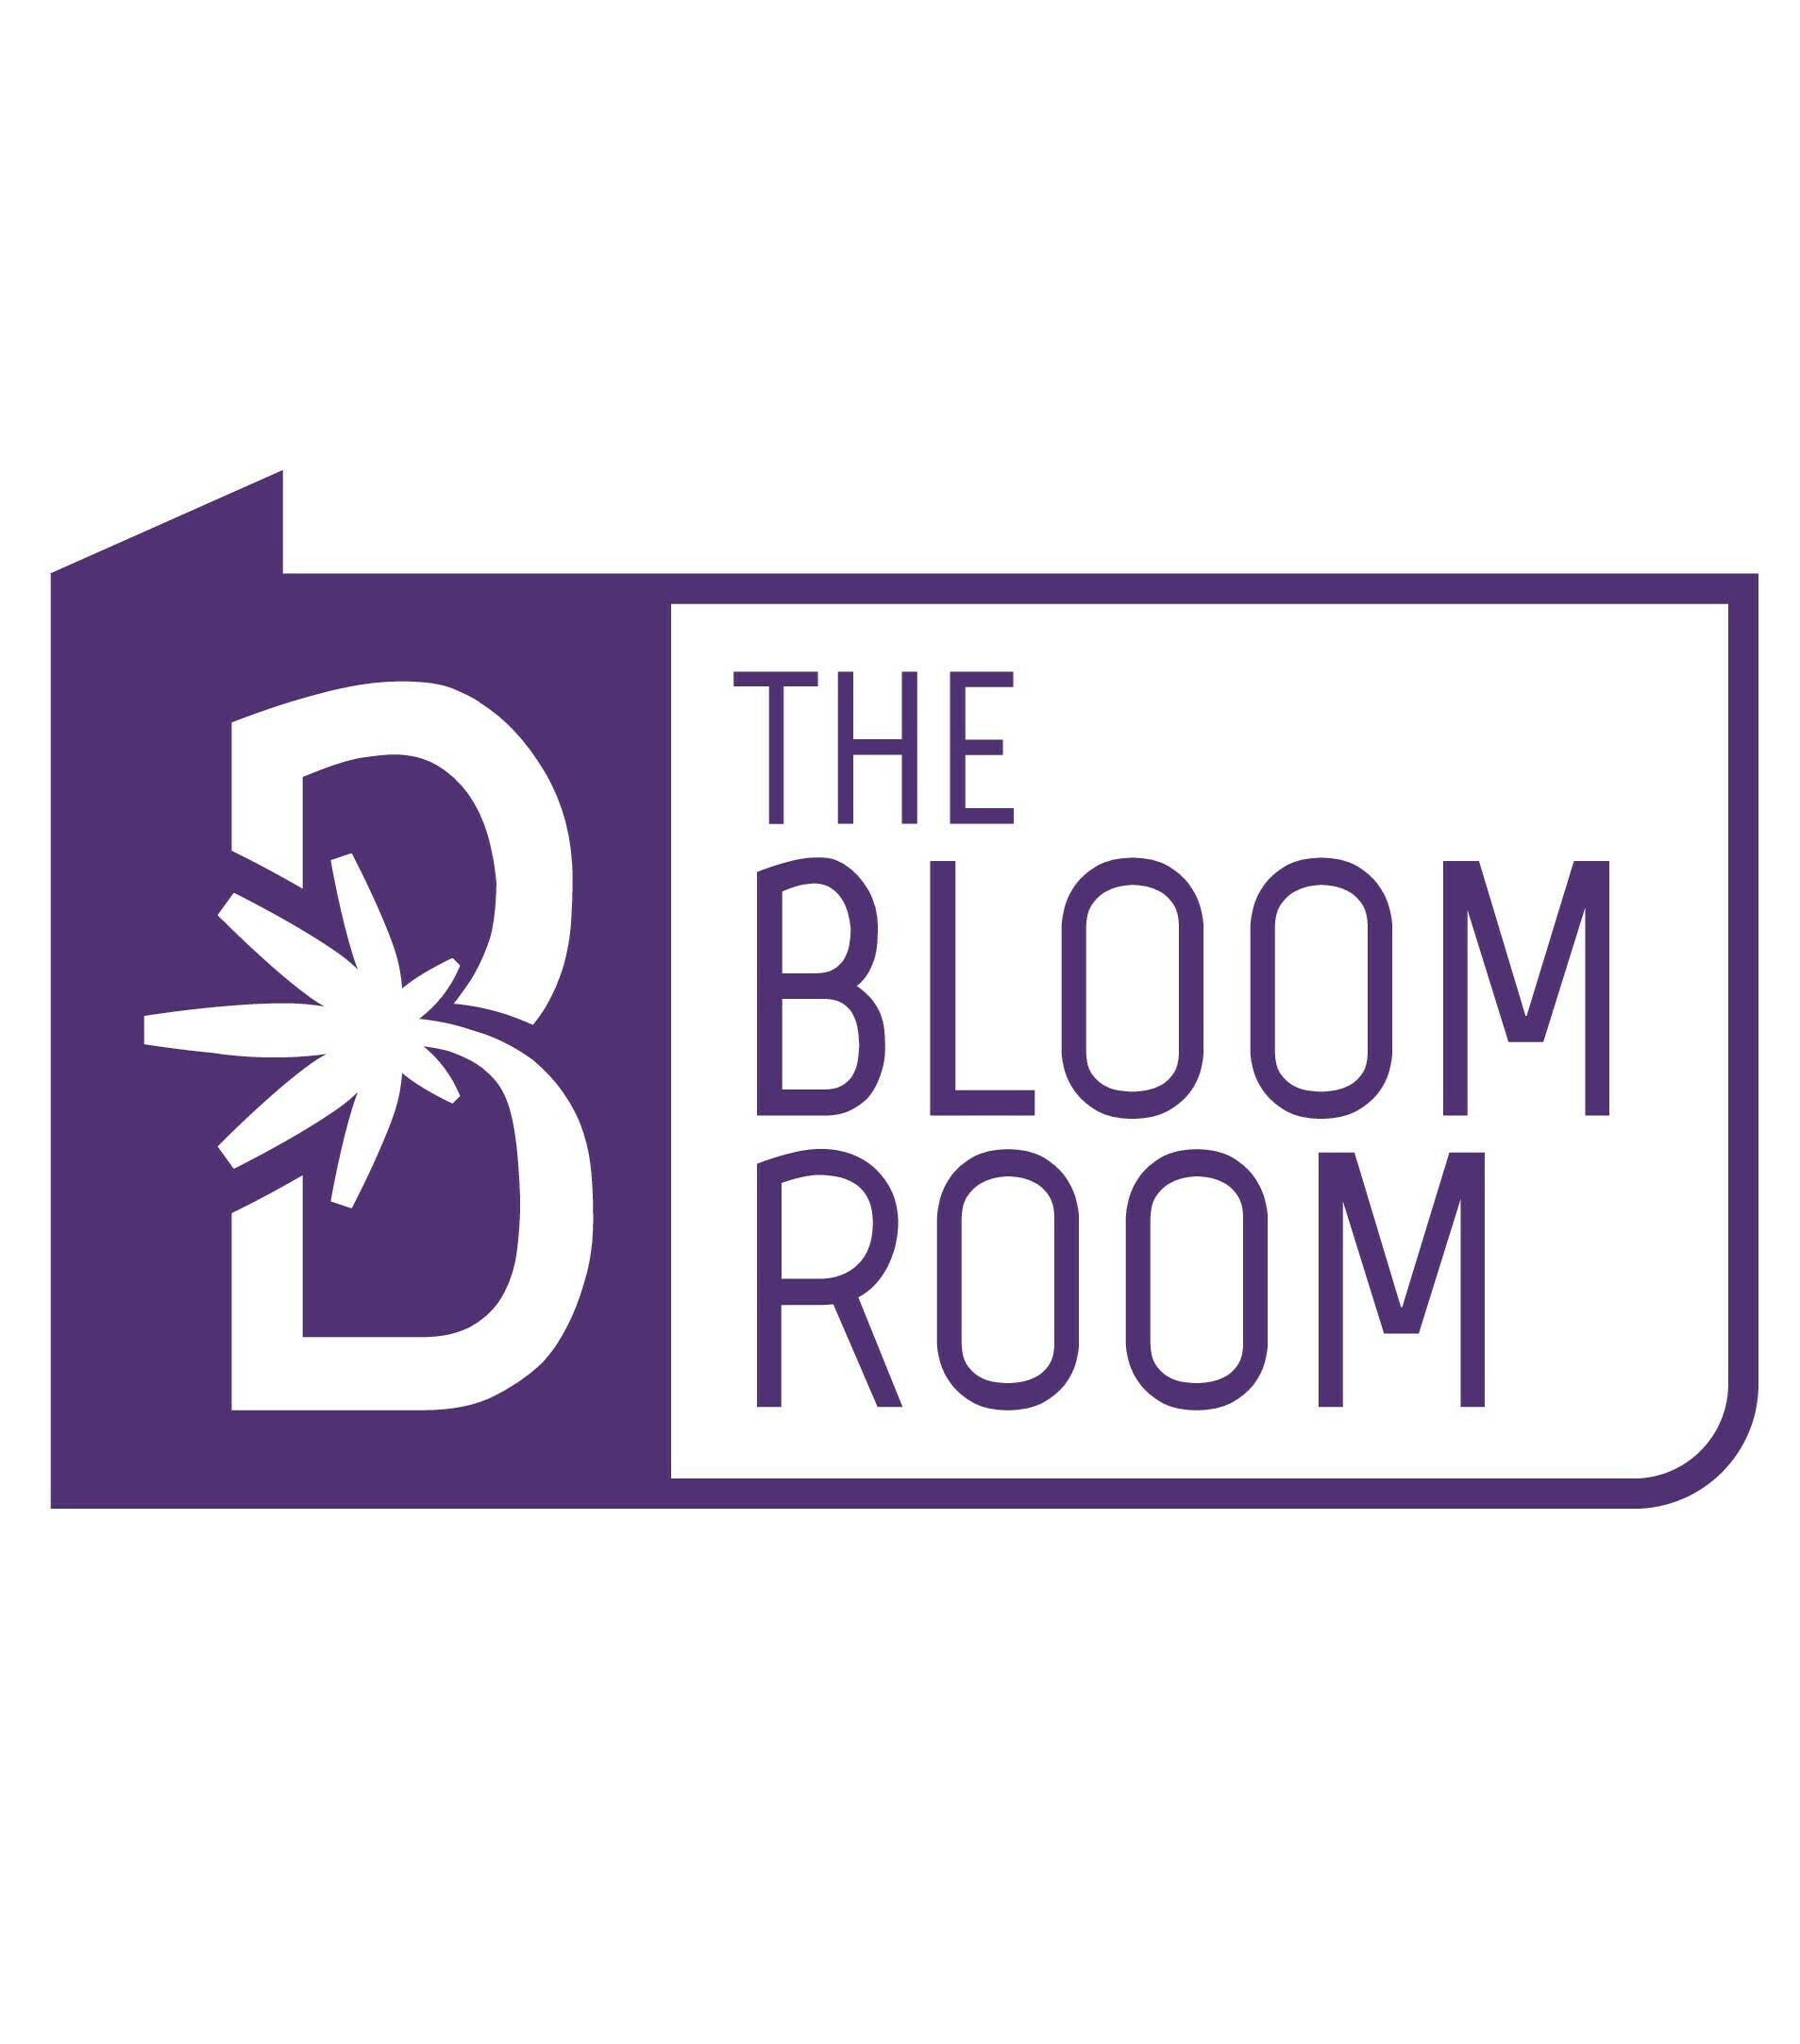 The Bloom Room – Villas de San Francisco